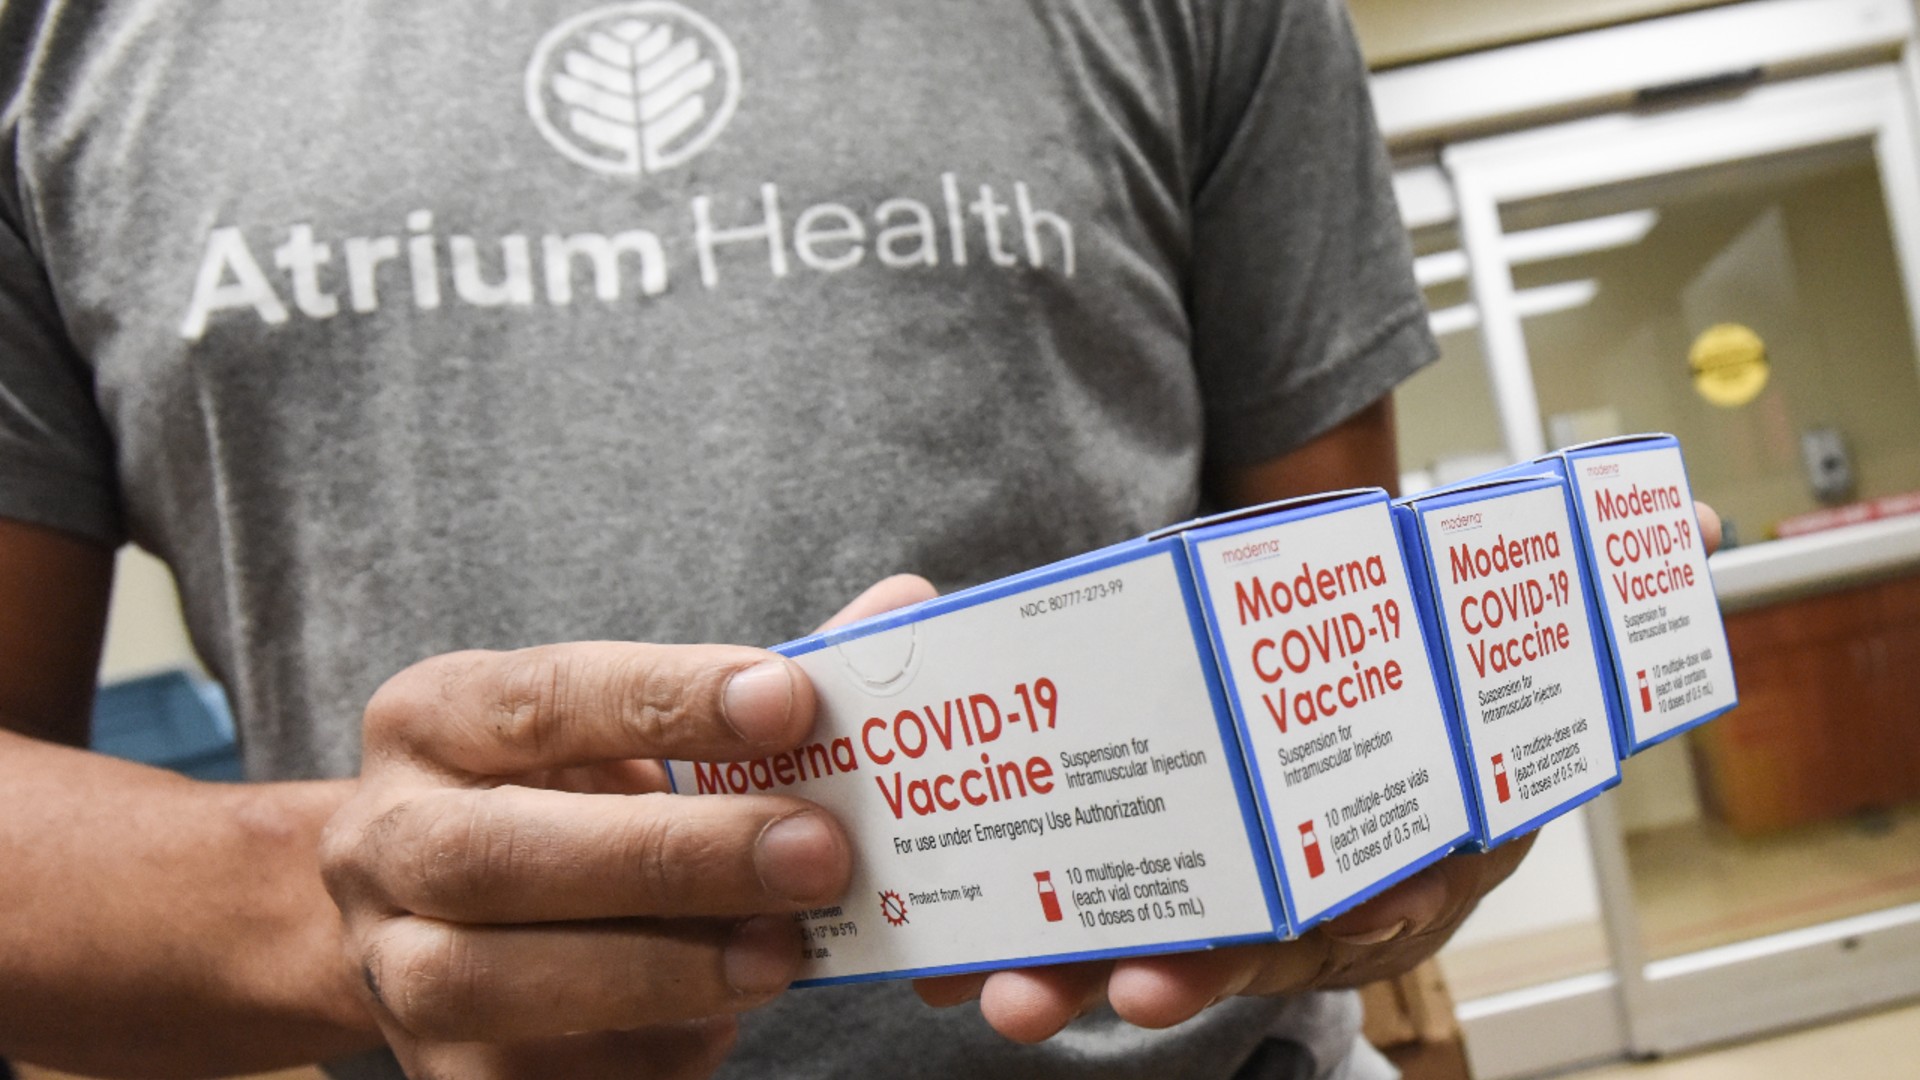 Atrium Health Has Received Moderna COVID-19 Vaccine